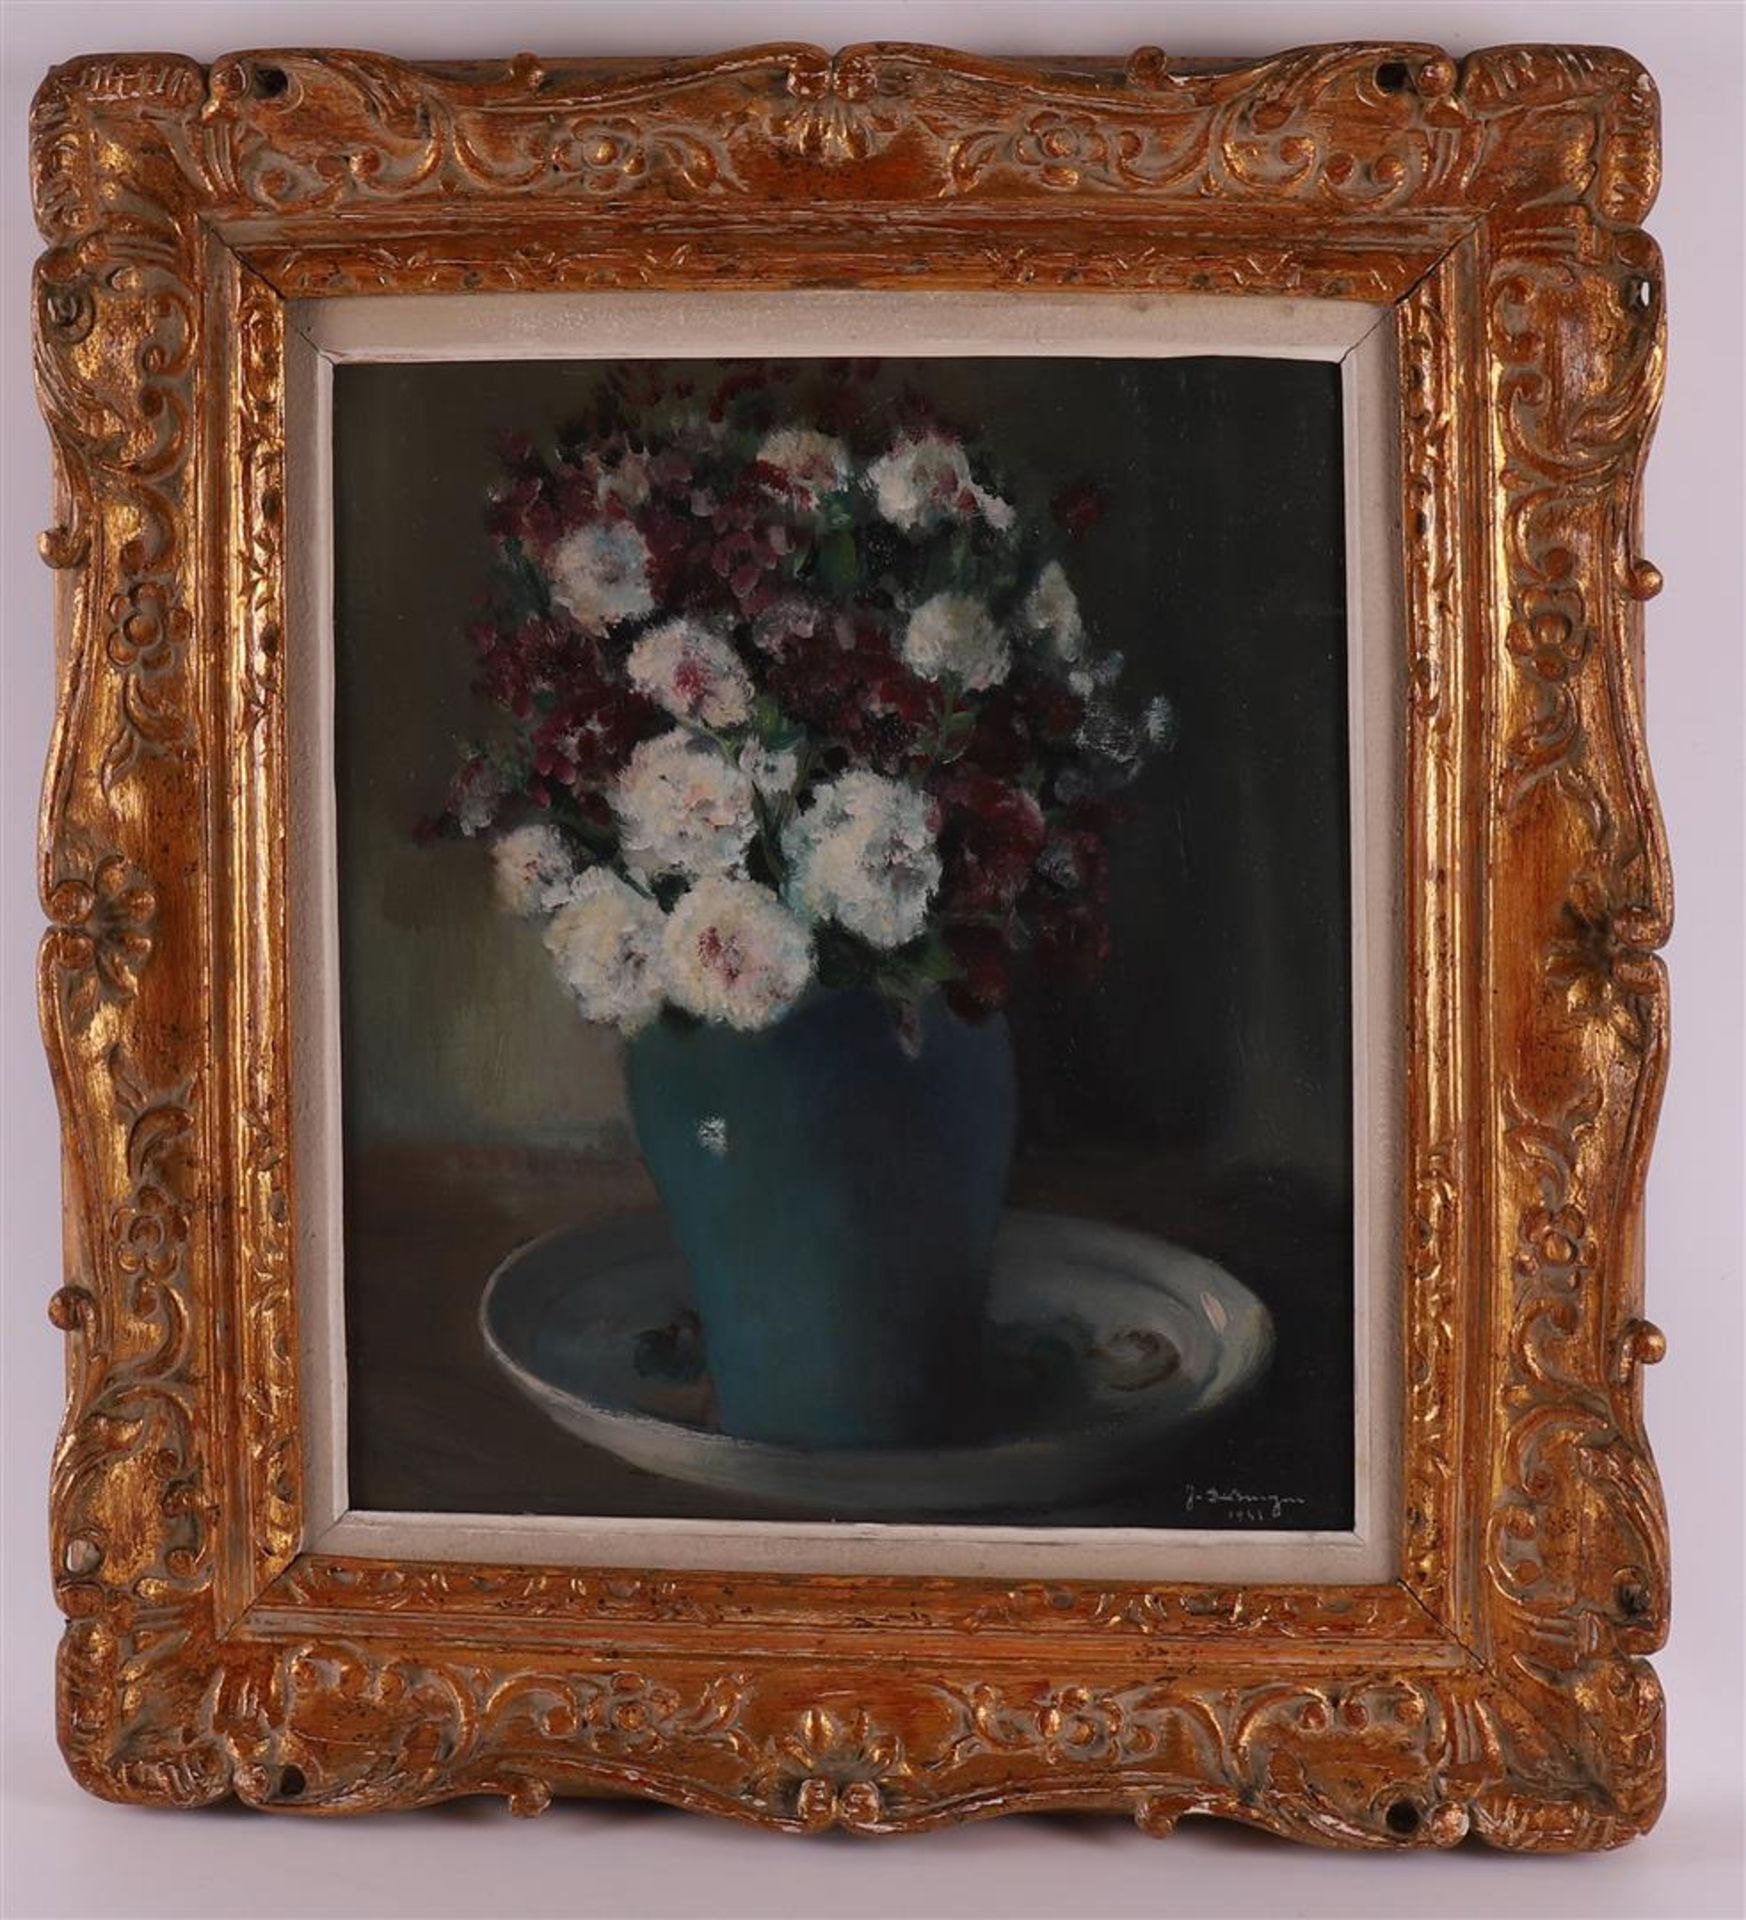 Bruyne, de Joris (1896-1965) "Still life in flowers", signed in full l.r. en 1943, oil/panel, h 45.5